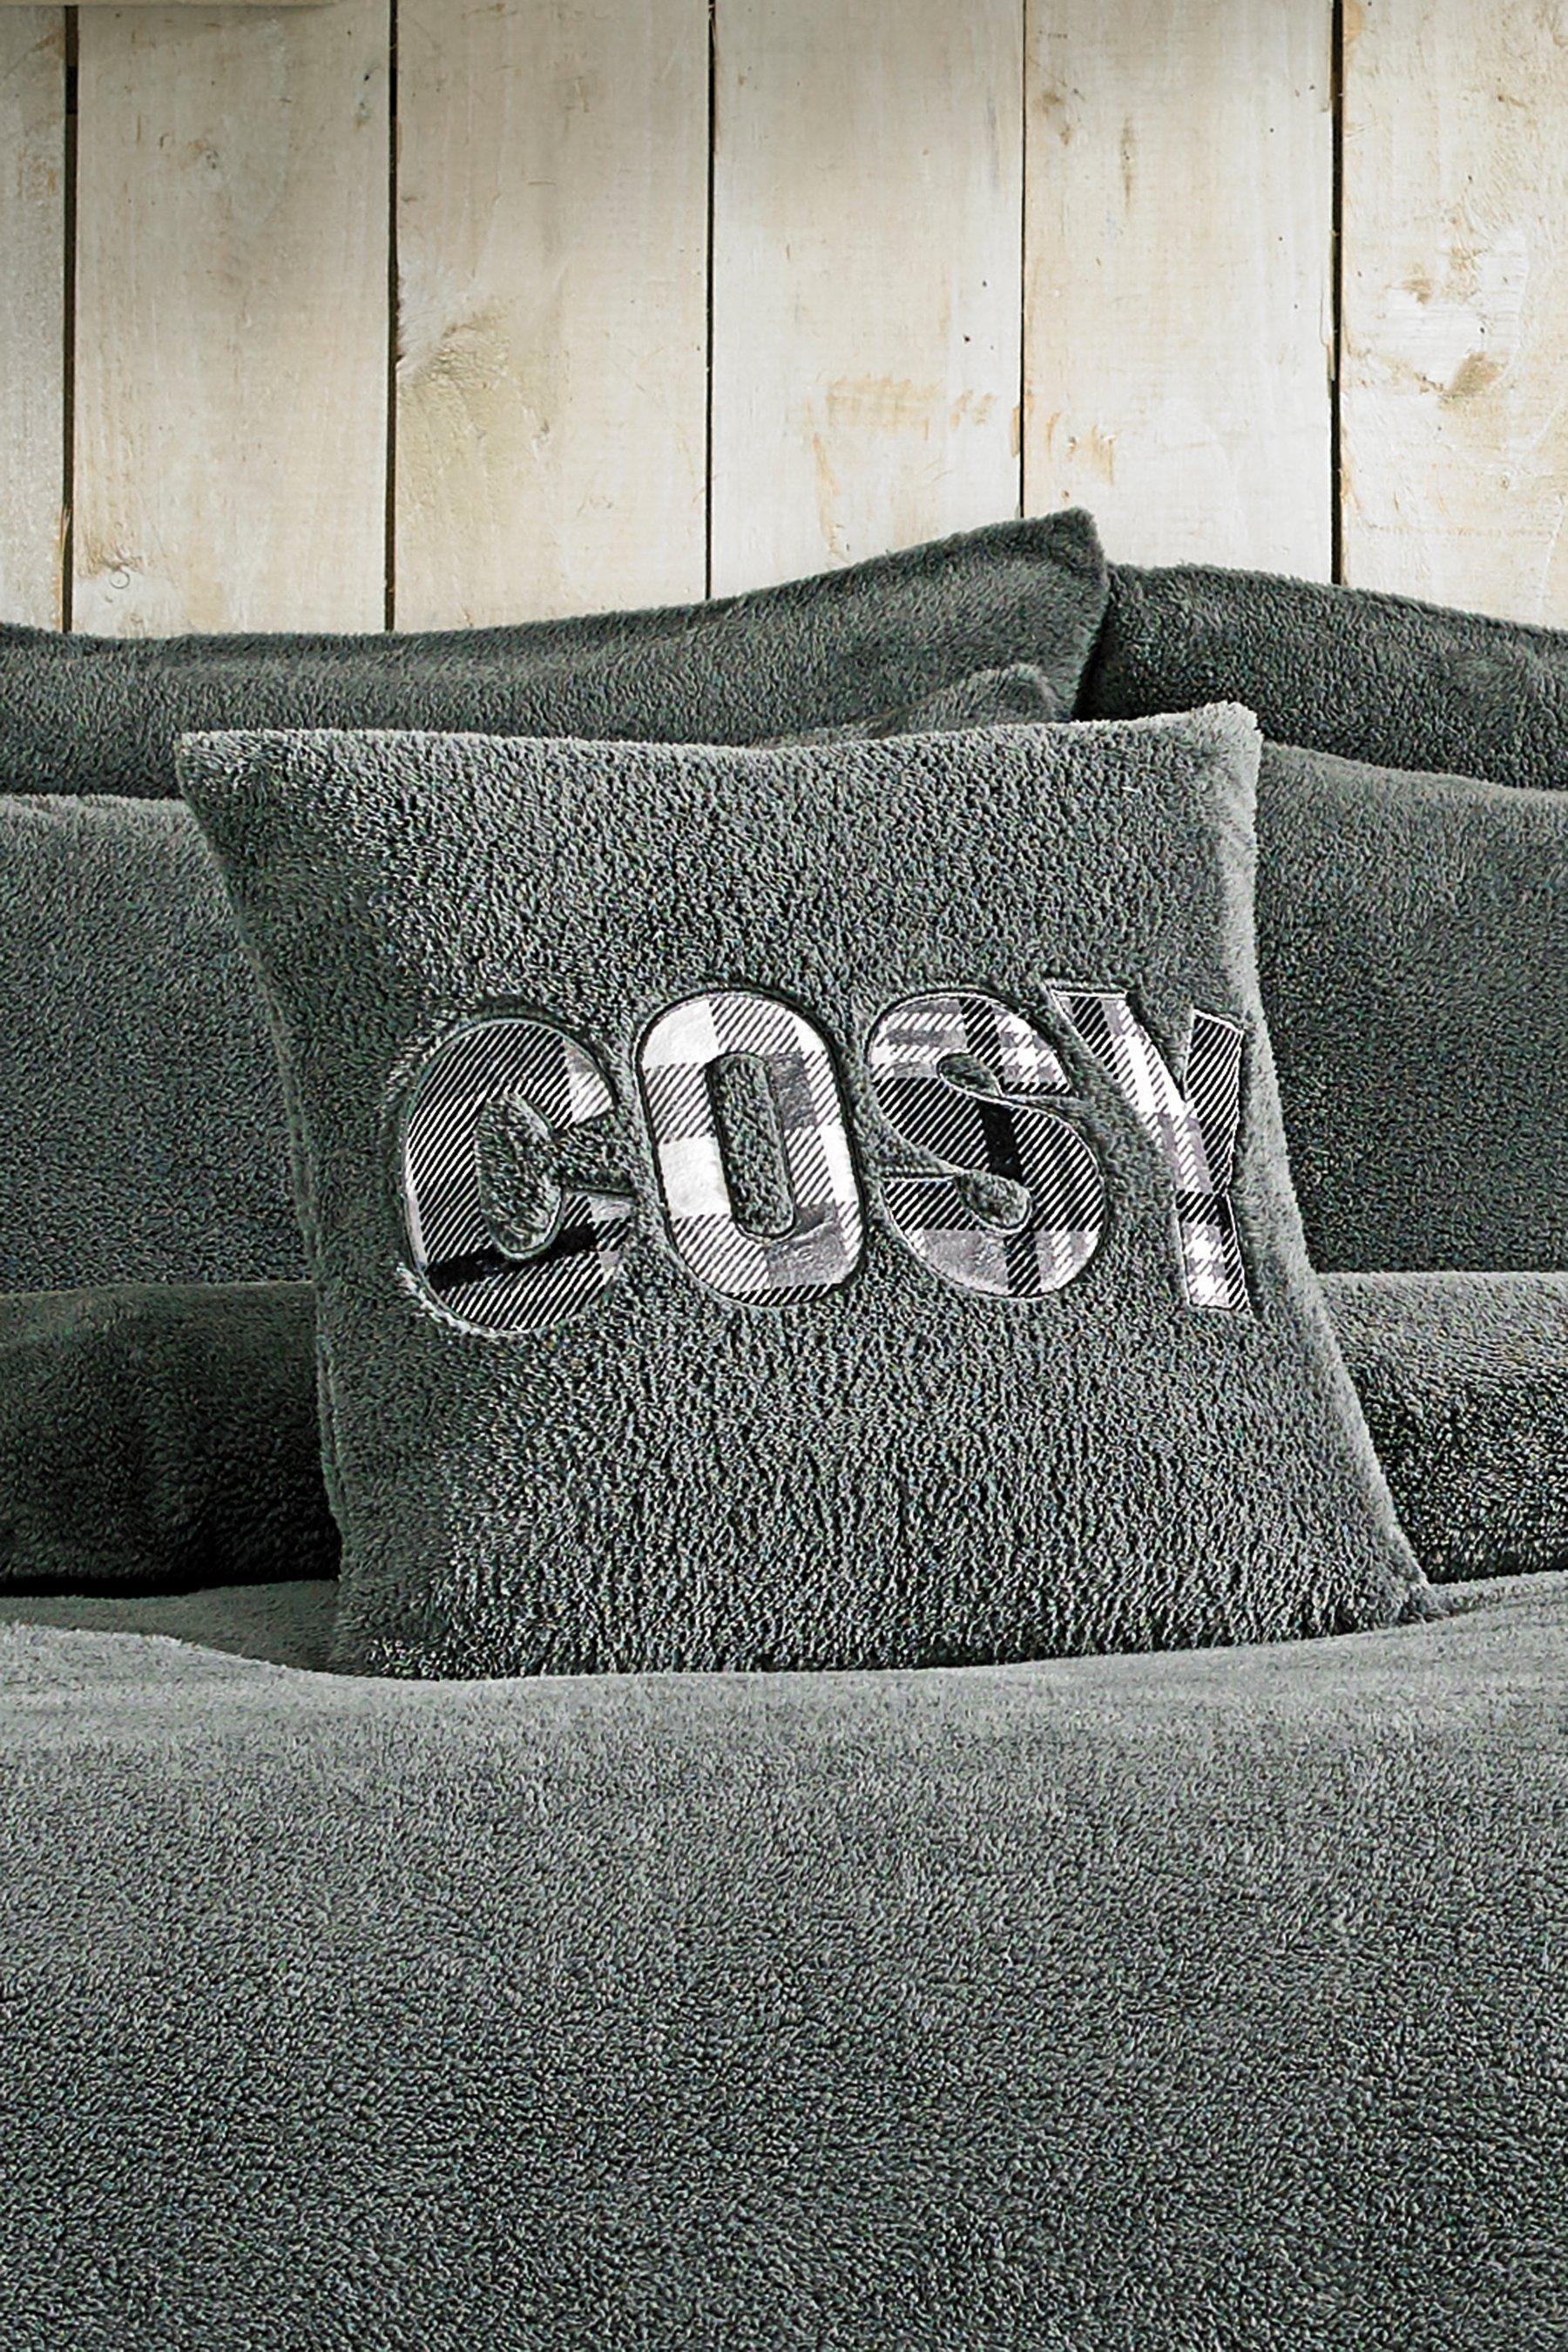 43x43cm 2x Ultra Cosy Comfortable Teddy Fleece Cushion Cover Pillow Case